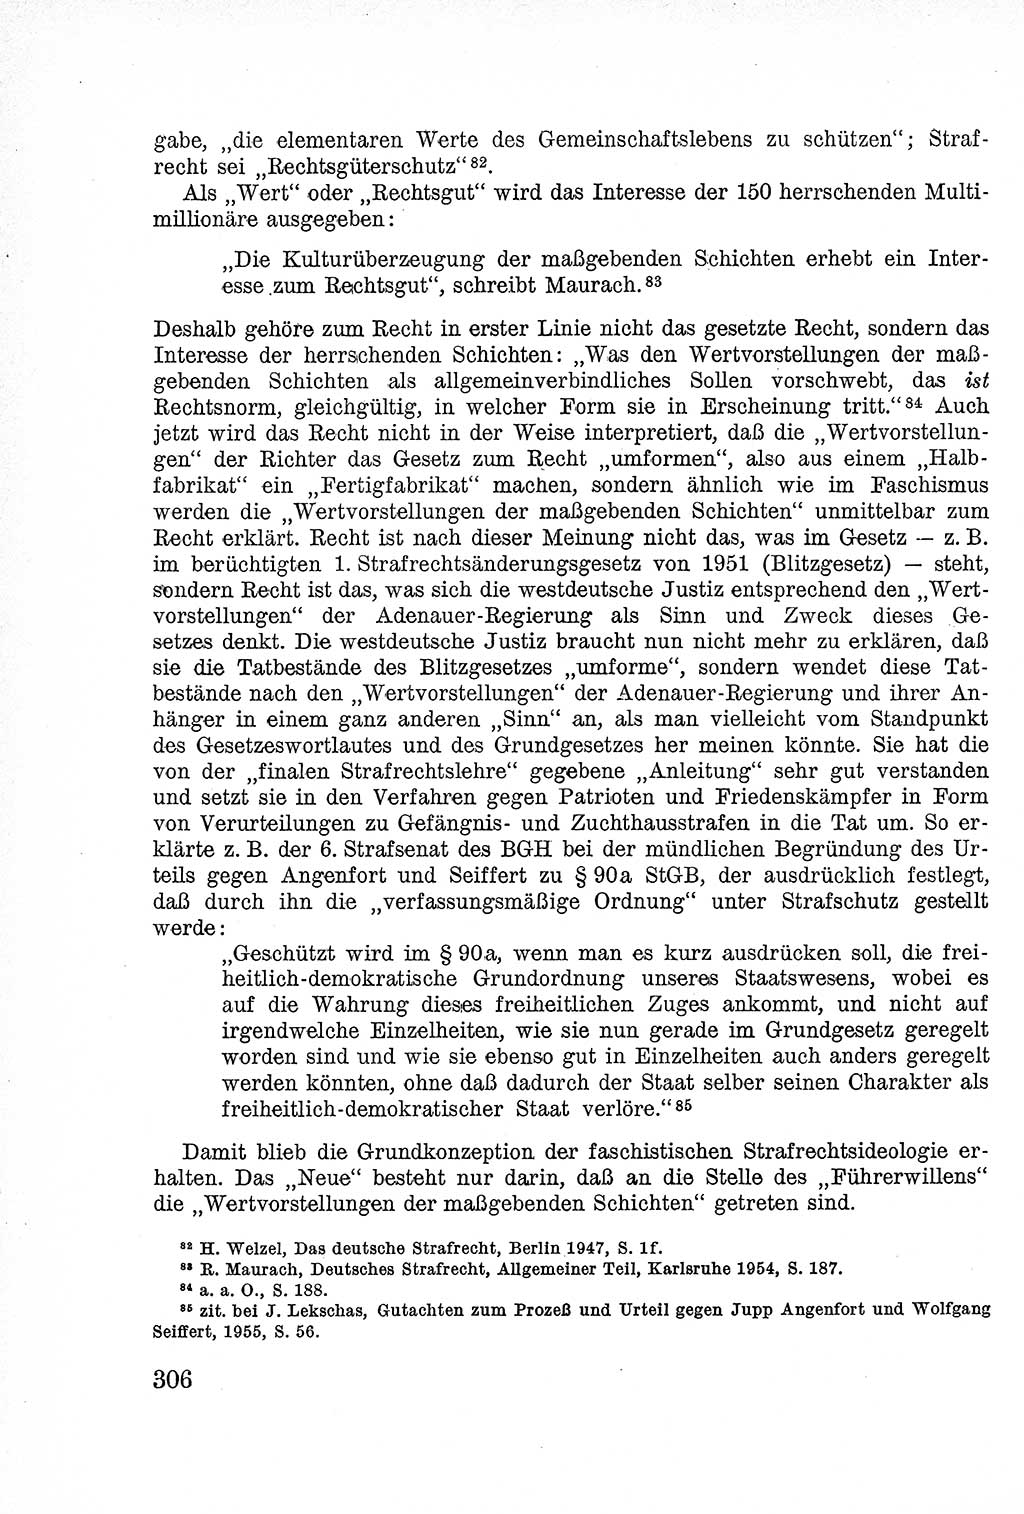 Lehrbuch des Strafrechts der Deutschen Demokratischen Republik (DDR), Allgemeiner Teil 1957, Seite 306 (Lb. Strafr. DDR AT 1957, S. 306)